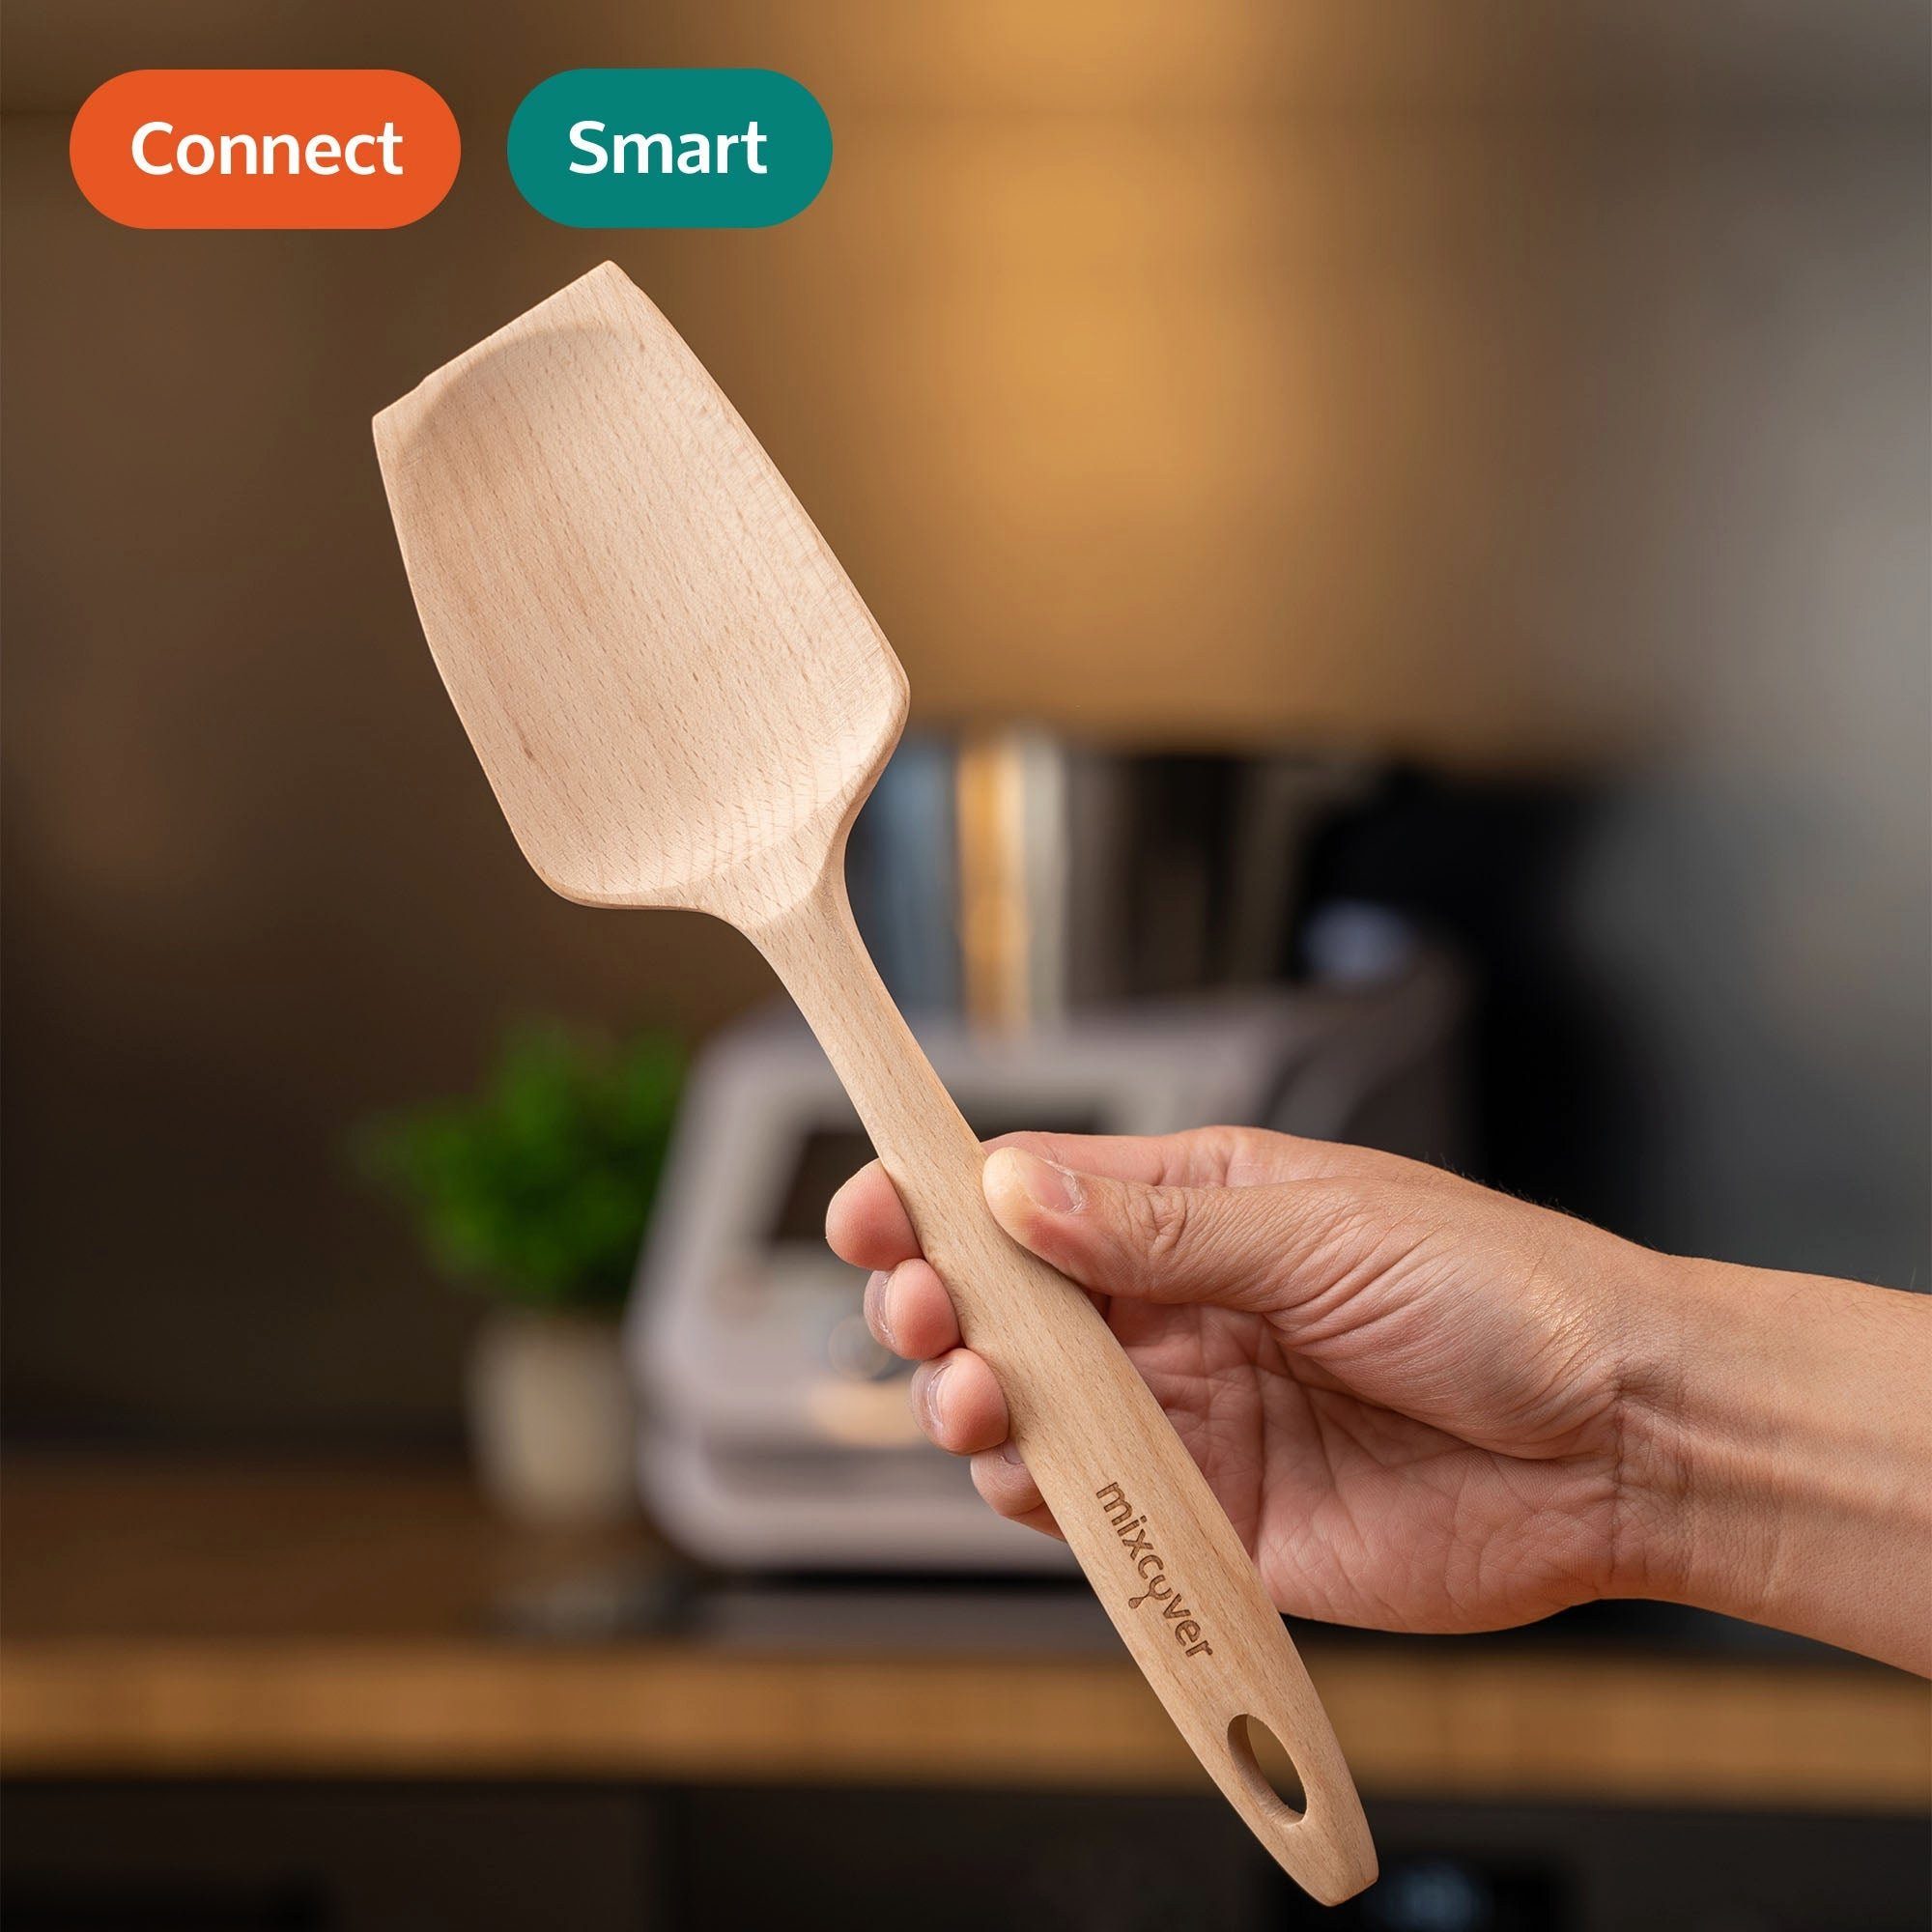 Monsieur & Cuisine Connect Smart mixcover Nachhaltiger Mixcover Küchenmaschinen-Adapter Holzspatel Zubehör